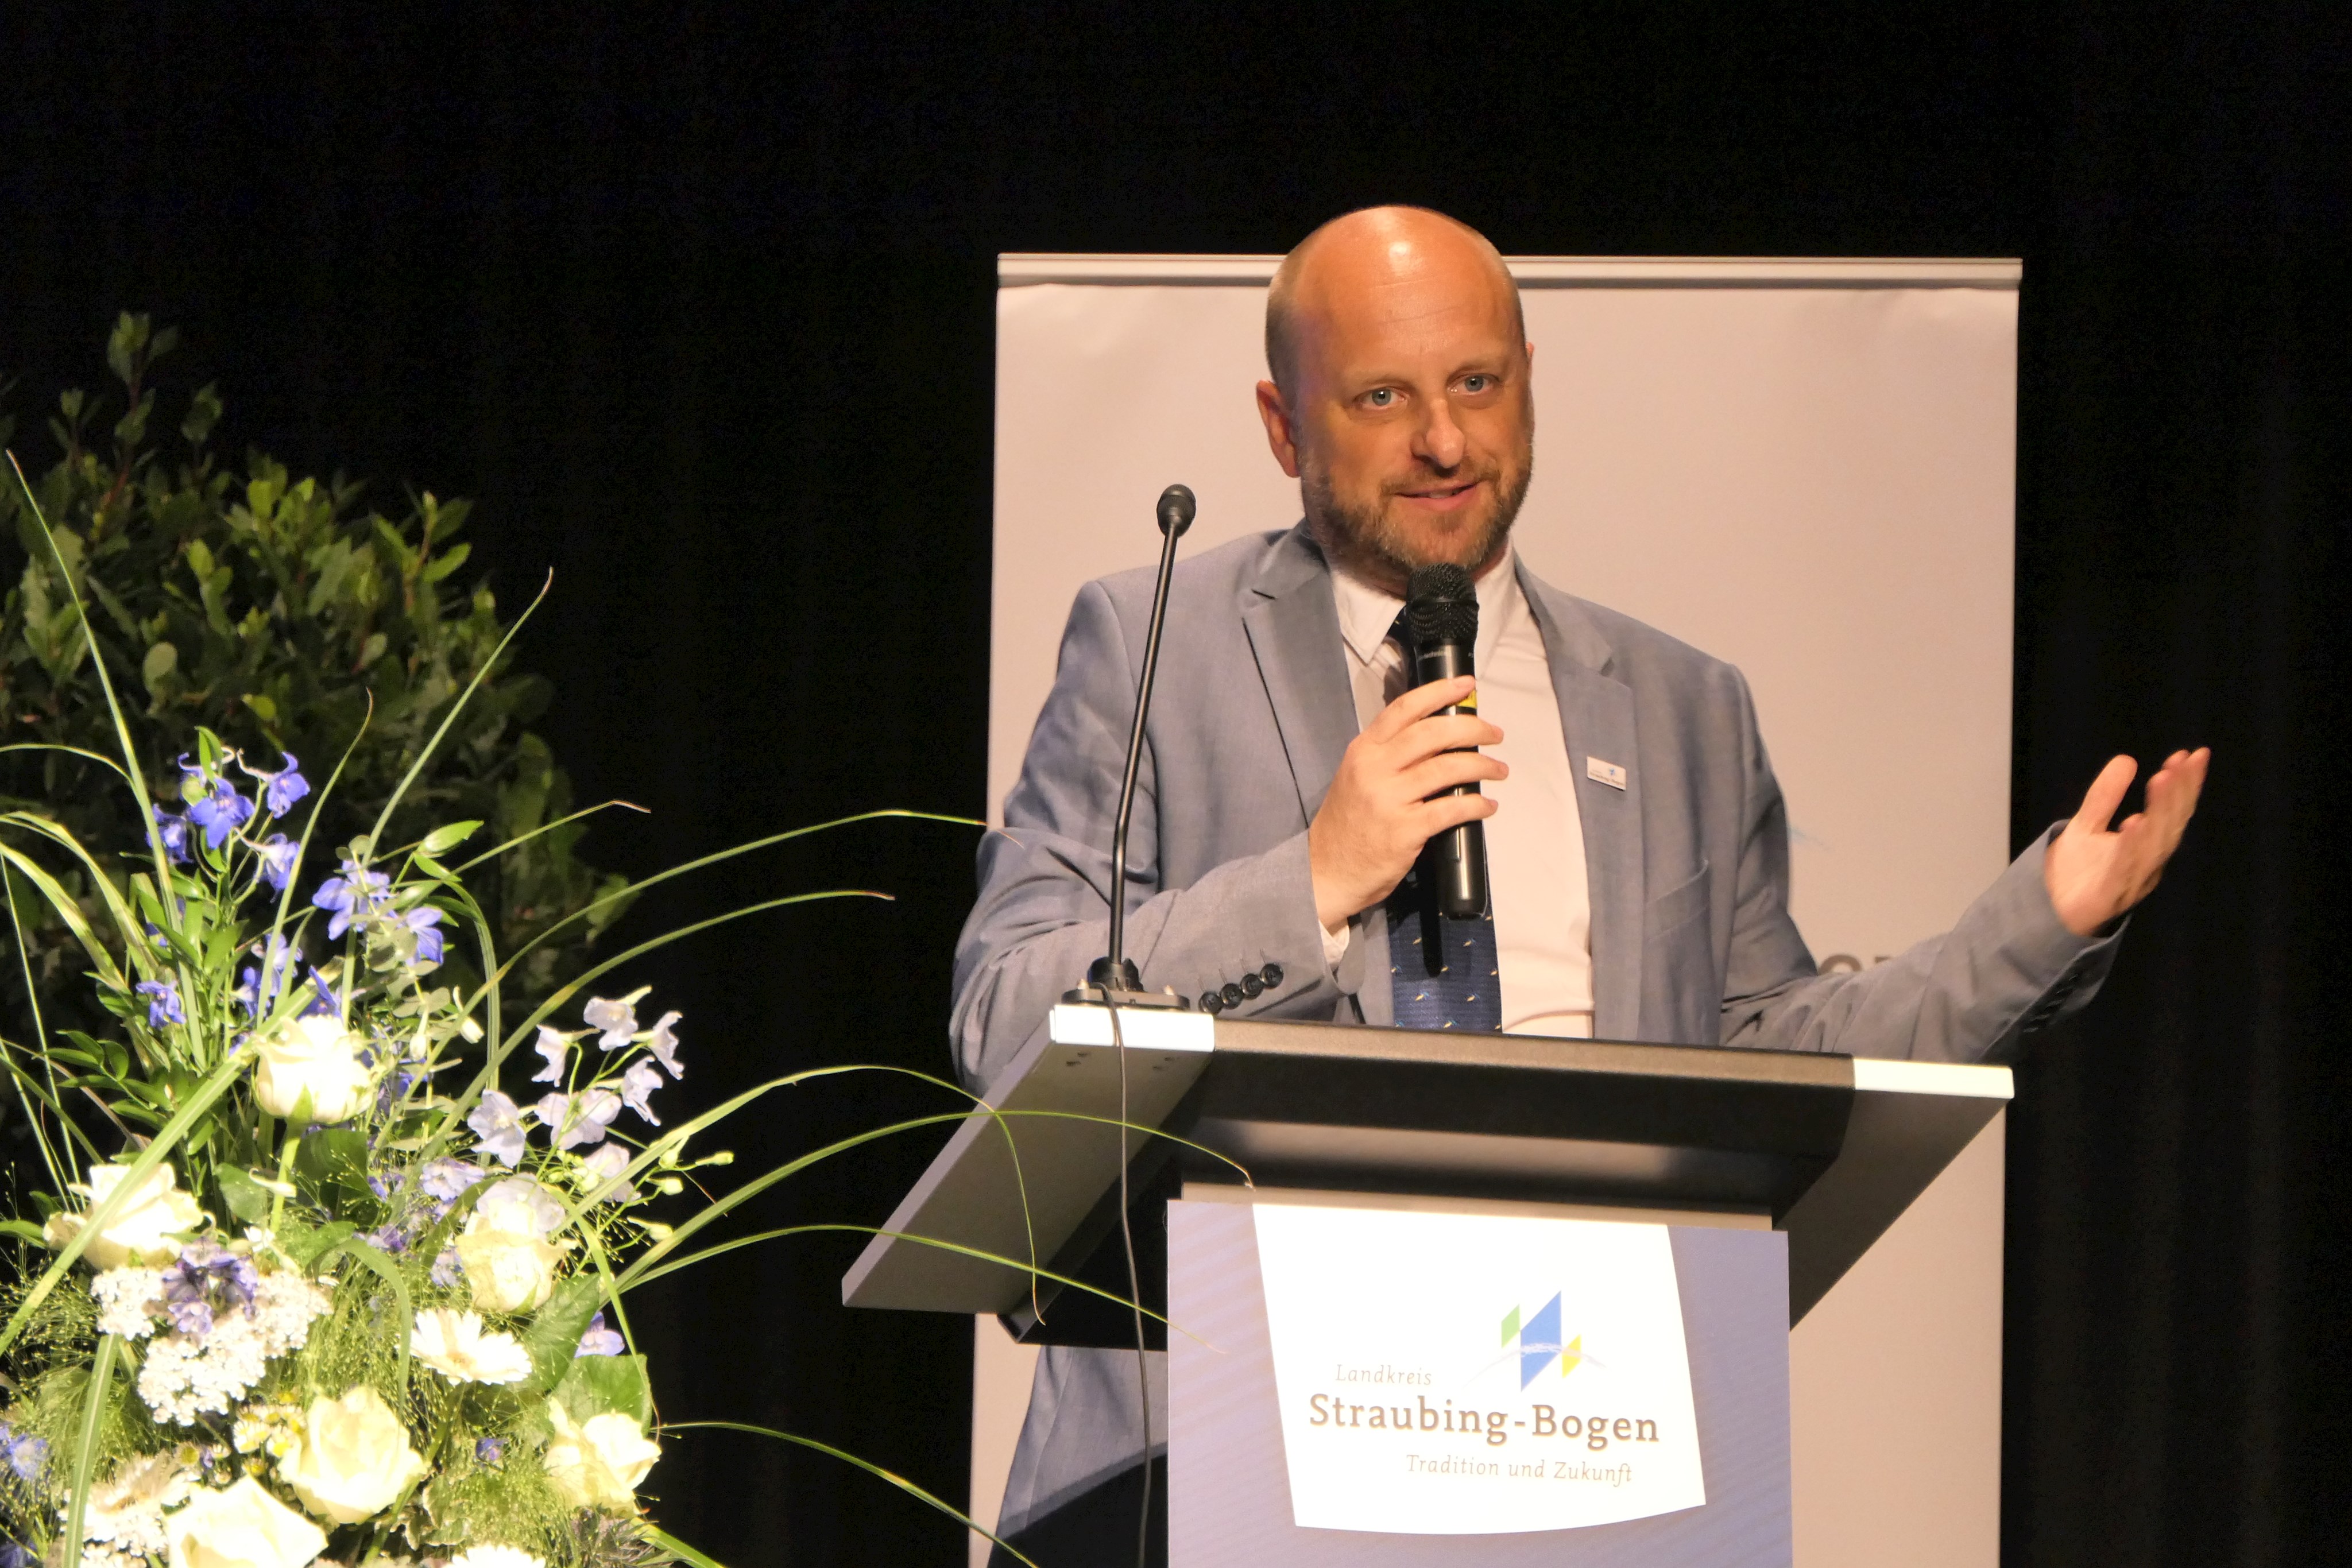 Pressesprecher Tobias Welck moderierte durch den abwechslungsreichen Abend.